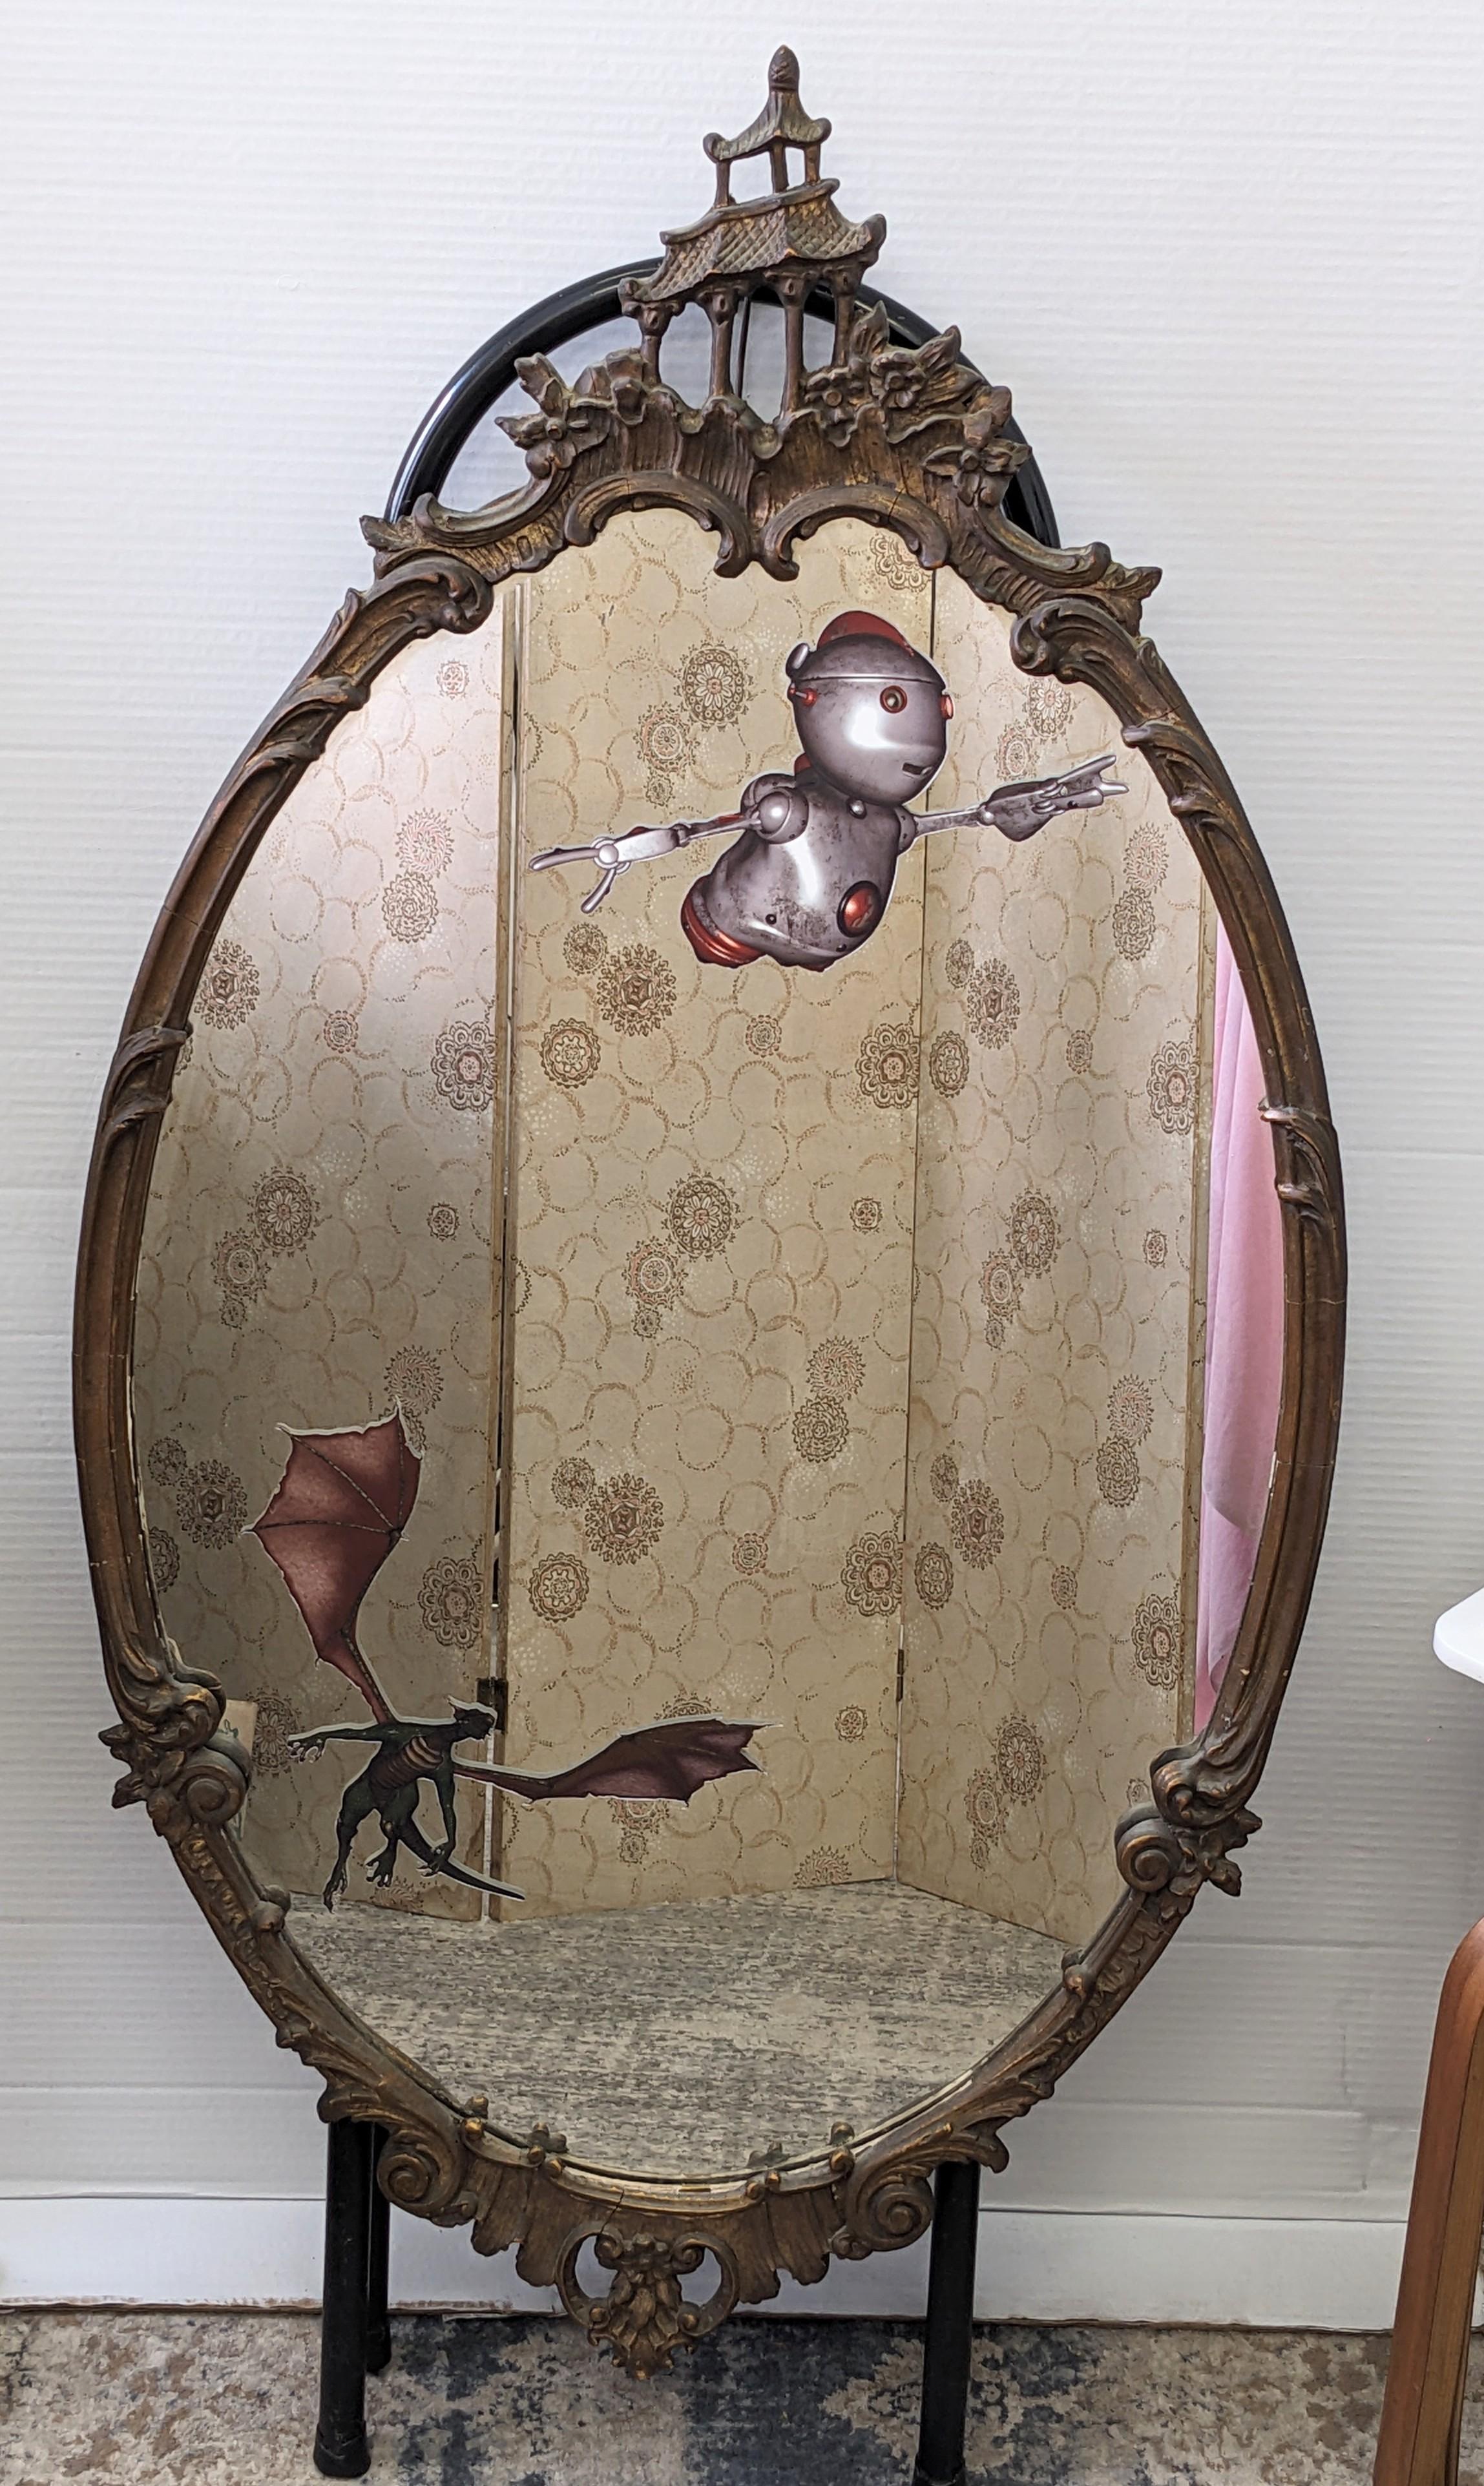 Ausgefallener Upcycelter Spiegel im Chinoiserie-Stil von Studio VL. Wir haben einen ovalen Spiegel aus den 1930er Jahren genommen und ihn mit unseren ausgefallenen Aufklebern kombiniert, darunter ein Drache, der einen fliegenden Roboter jagt.